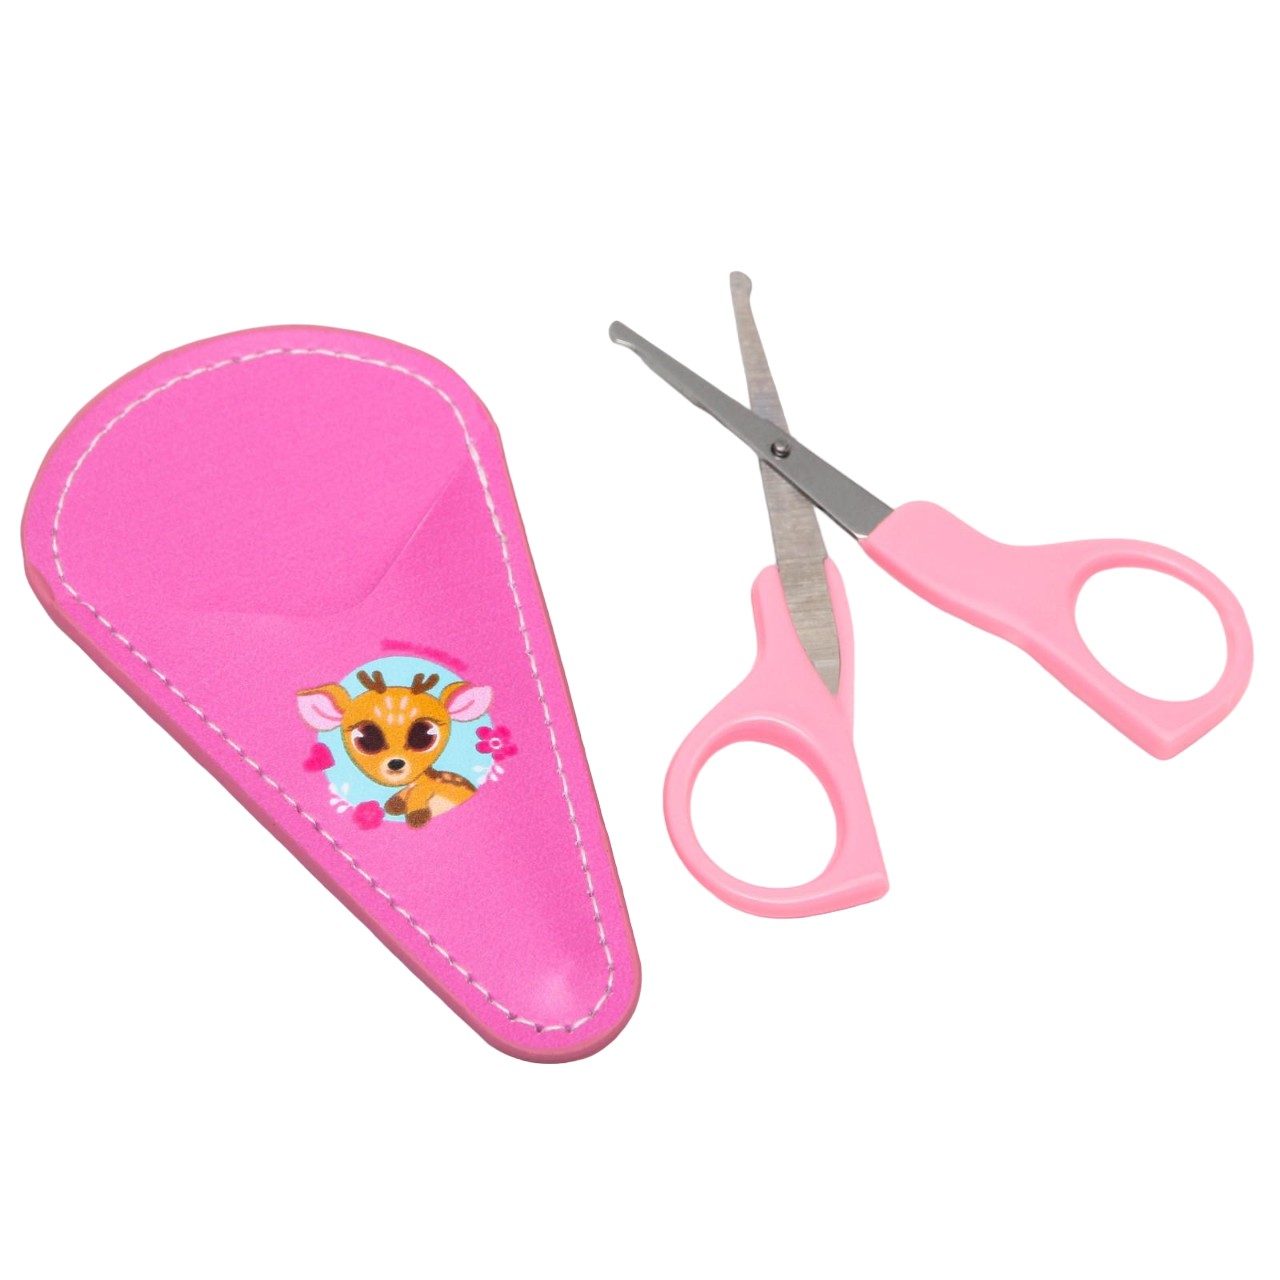 Детские, безопасные, маникюрные ножницы Оленёнок, цвет розовый детские безопасные маникюрные ножницы оленёнок розовый